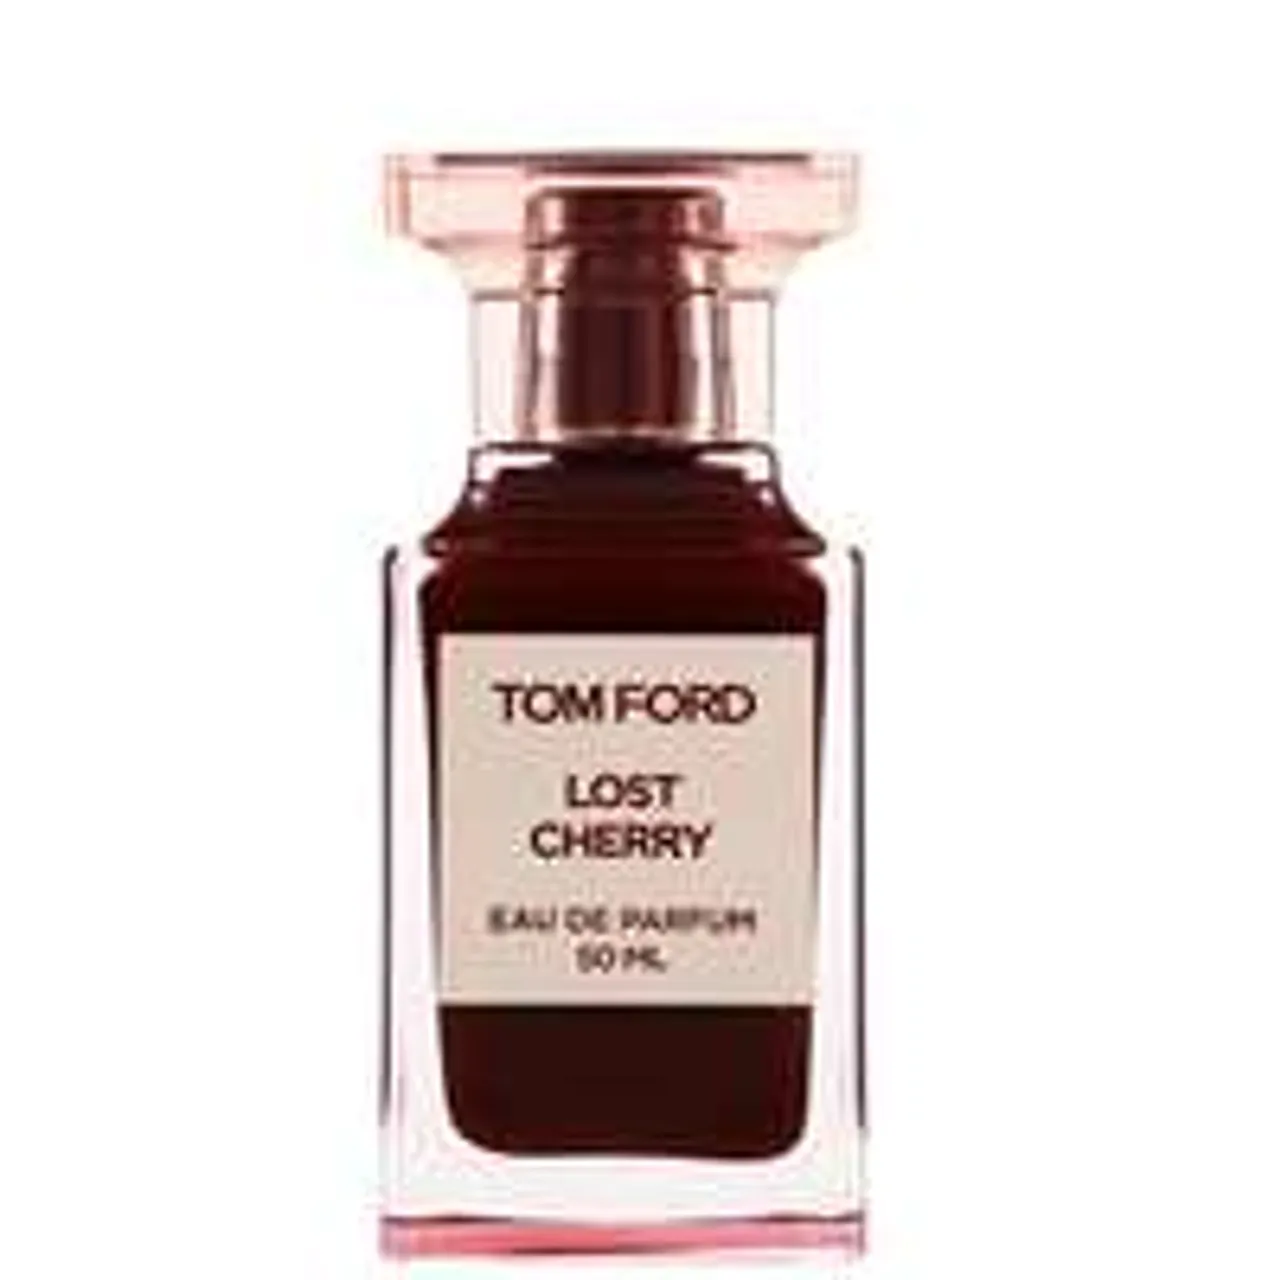 Tom Ford Lost Cherry Eau de Parfum Spray 50ml